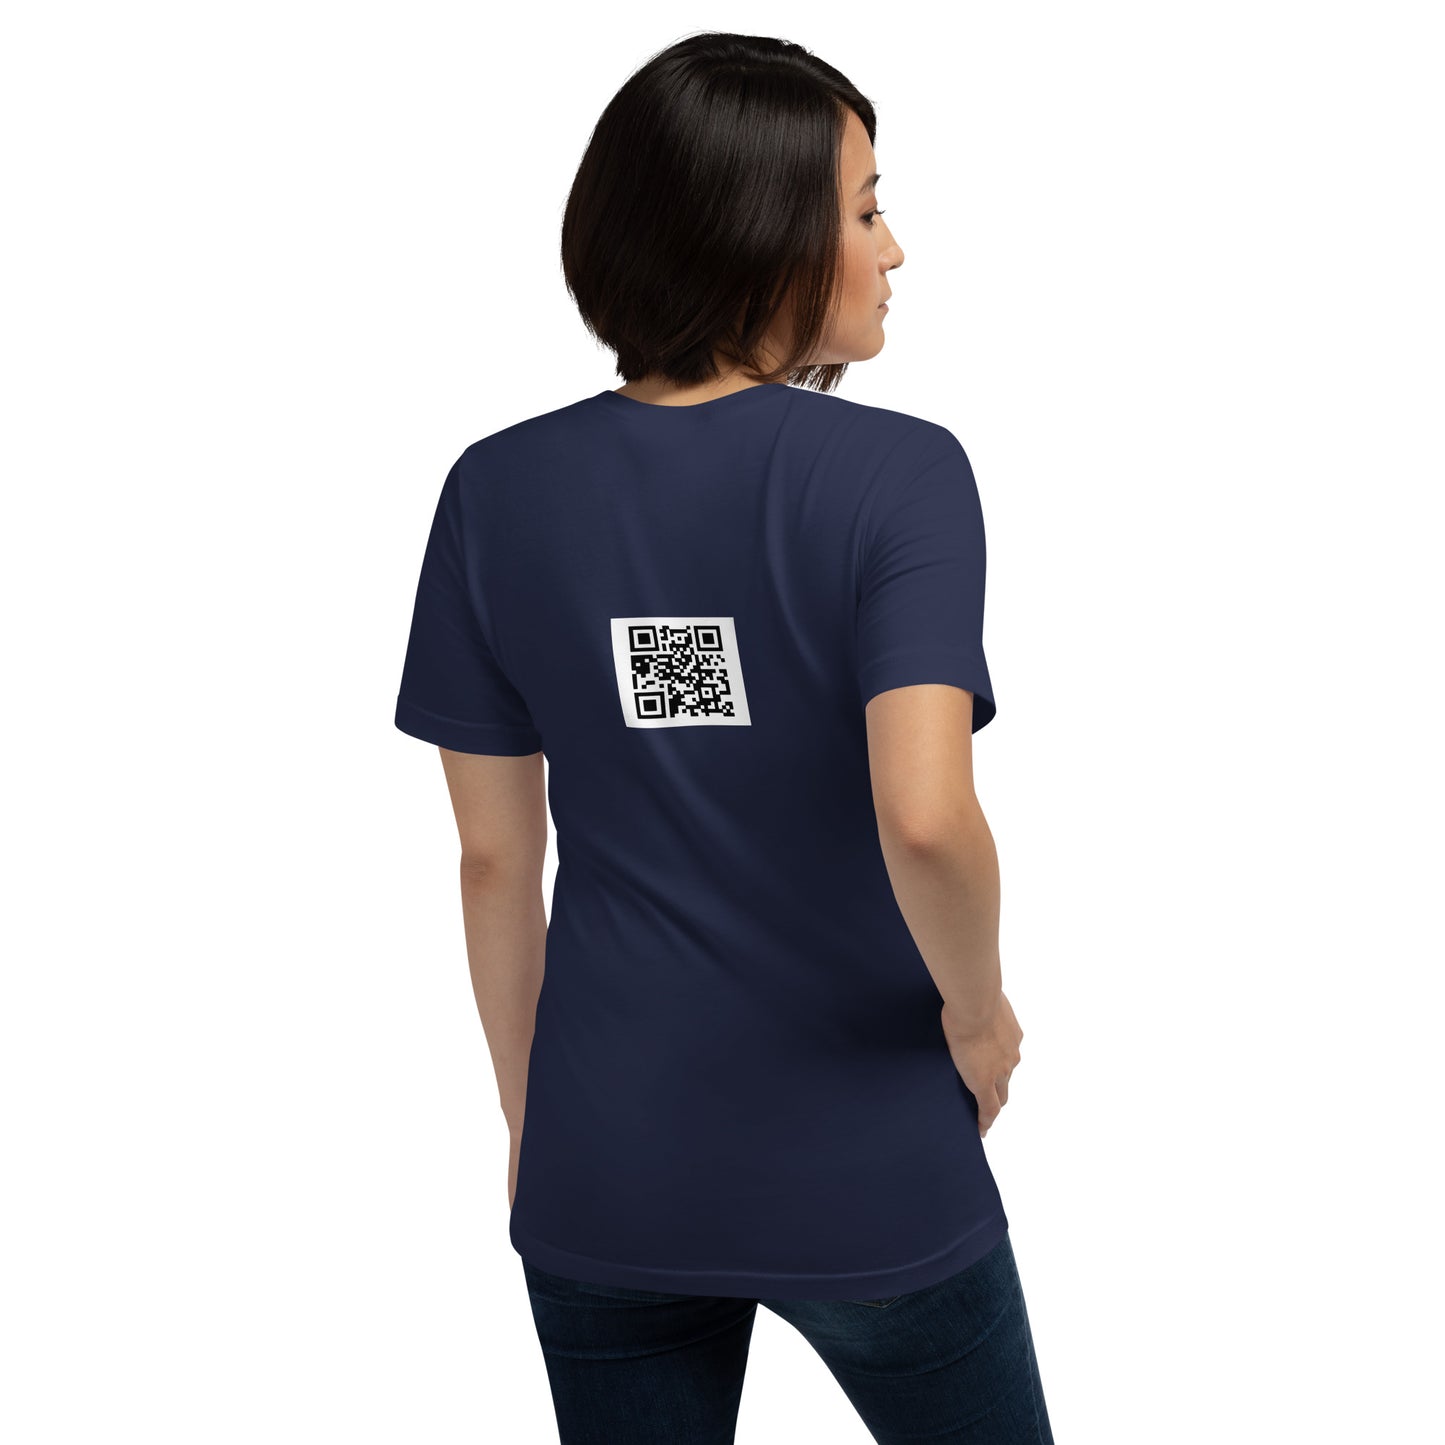 Heat Tracer highheatrichie Unisex t-shirt